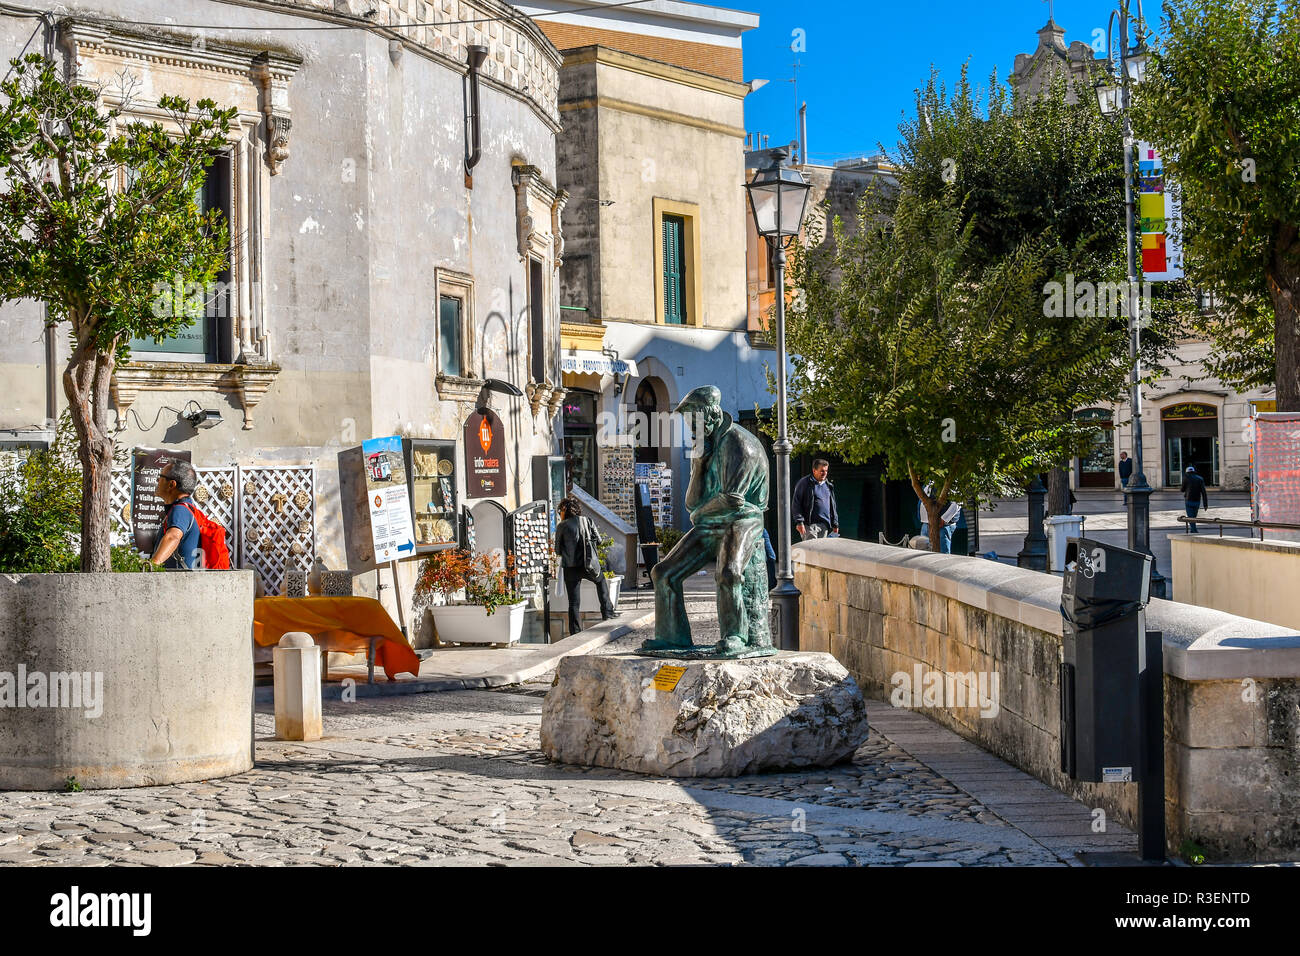 Le persone passano in negozi di souvenir vicino alla statua di bronzo di un uomo di pensiero nella Piazza Vittorio Veneto di Matera, Italia, nella regione Basilicata Foto Stock